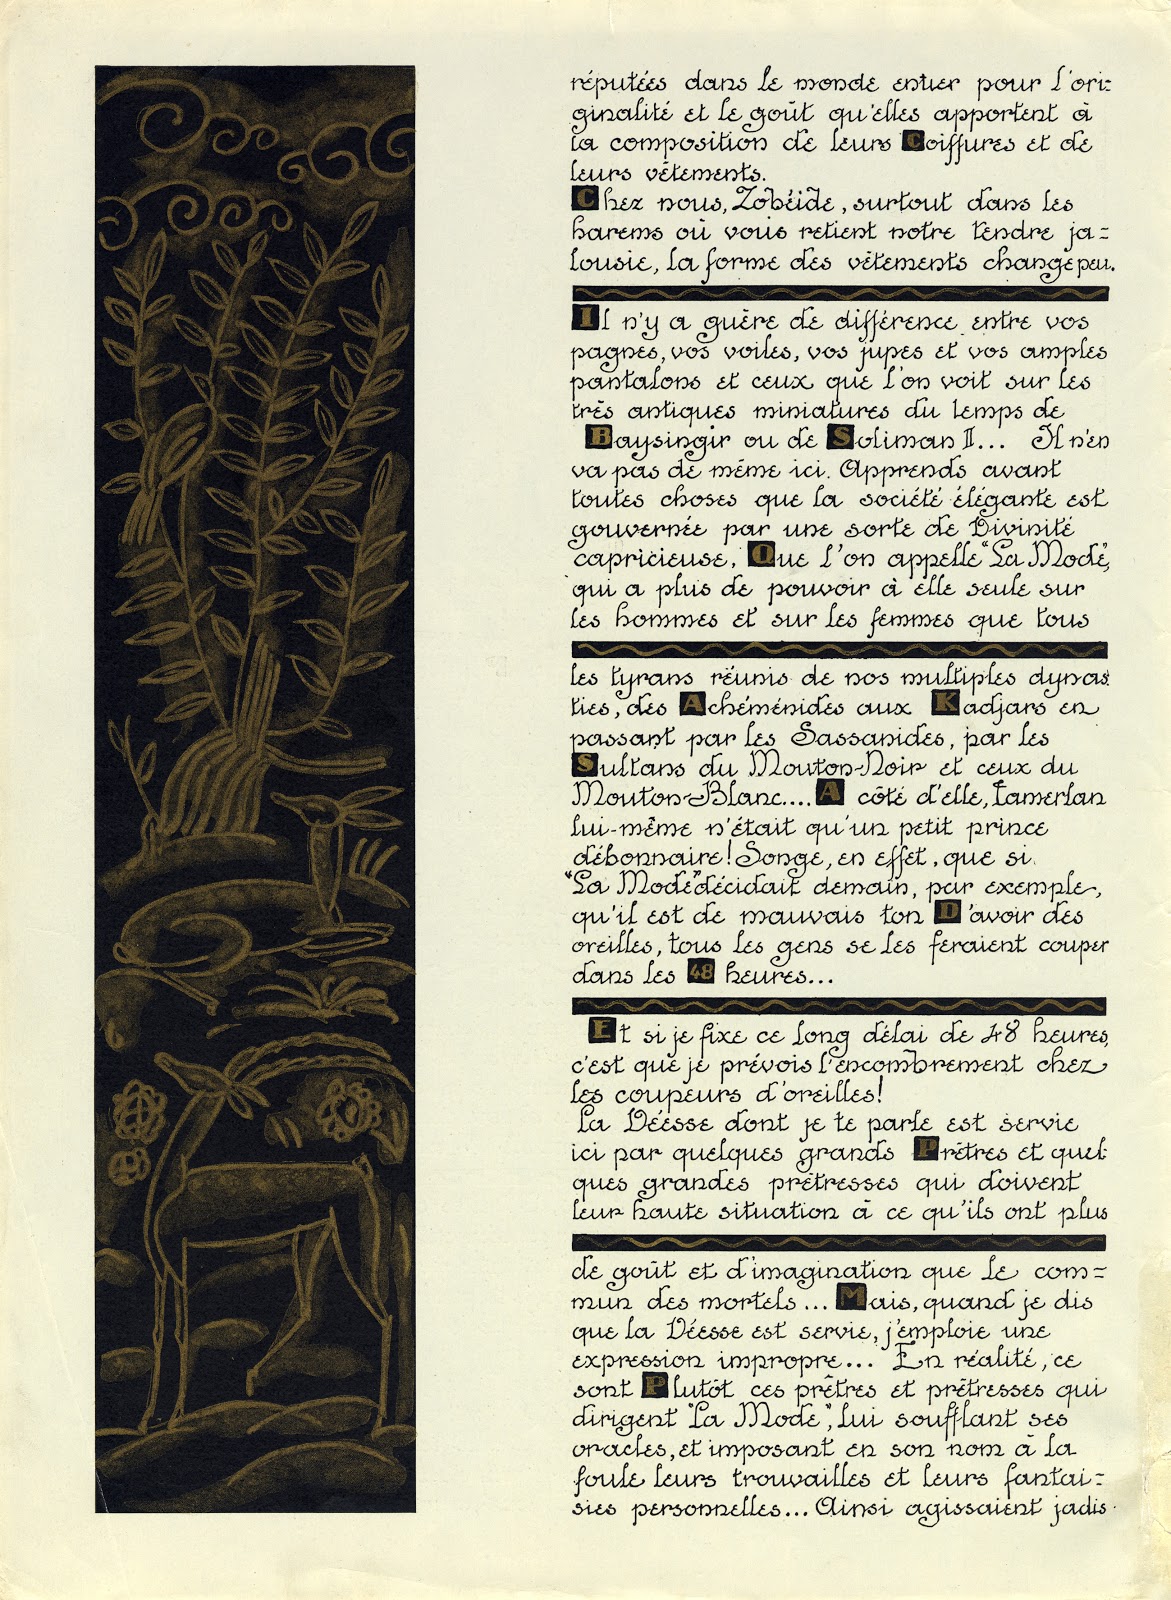 Eduardo Garcia Benito - Dernière lettre persane mise en français et accompagnée de douze dessins exécutés dans le gout persan. París, La Maison Fourrures Max, realizado por Draeger Frères, (1920)